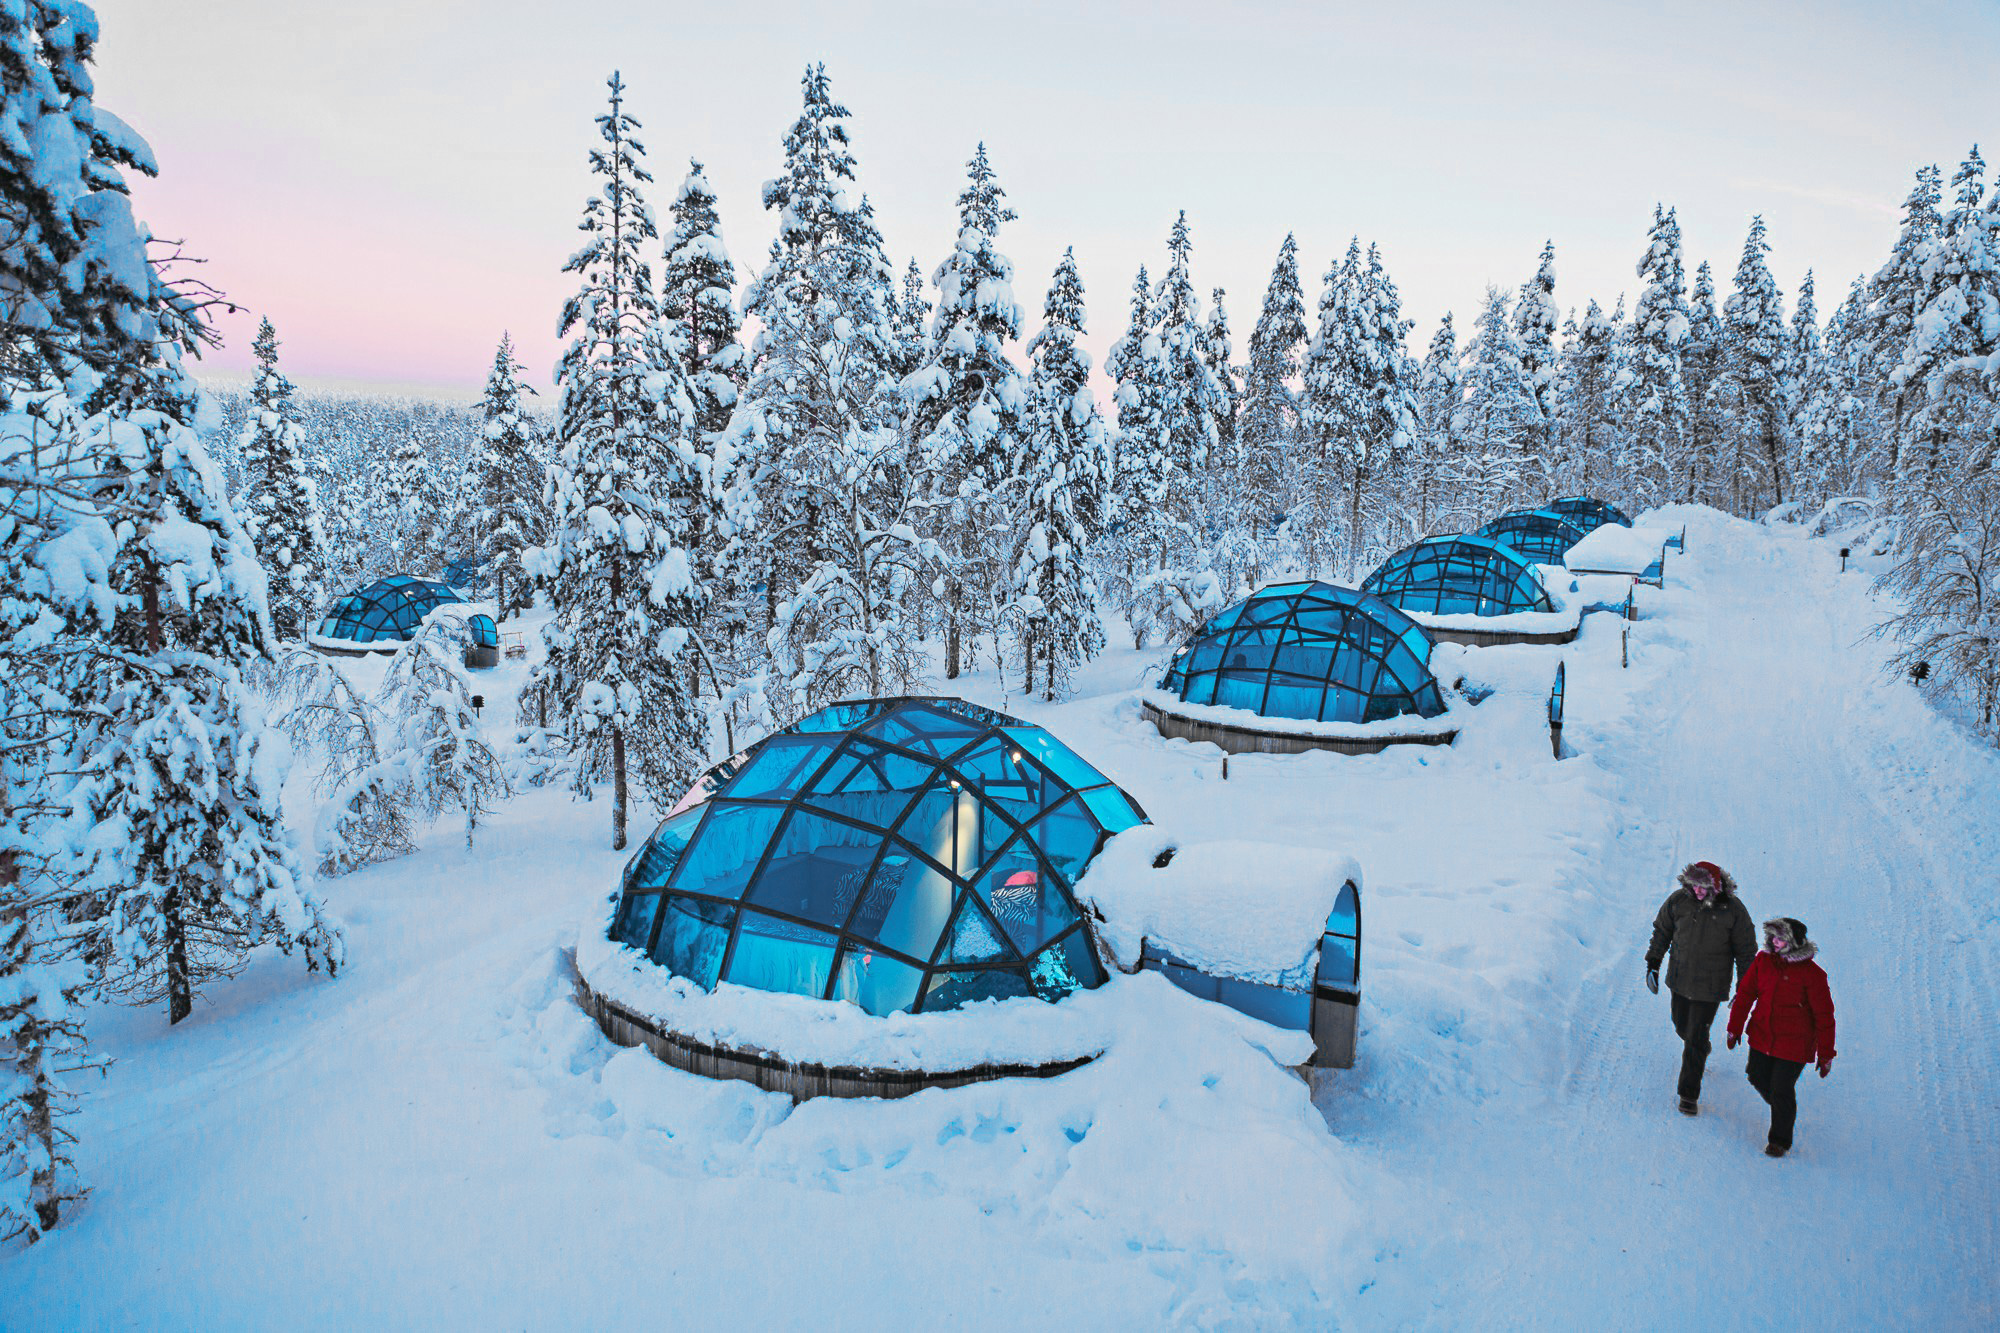 Kakslauttanen Arctic Resort Saariselkä Finland stay Northern Lights